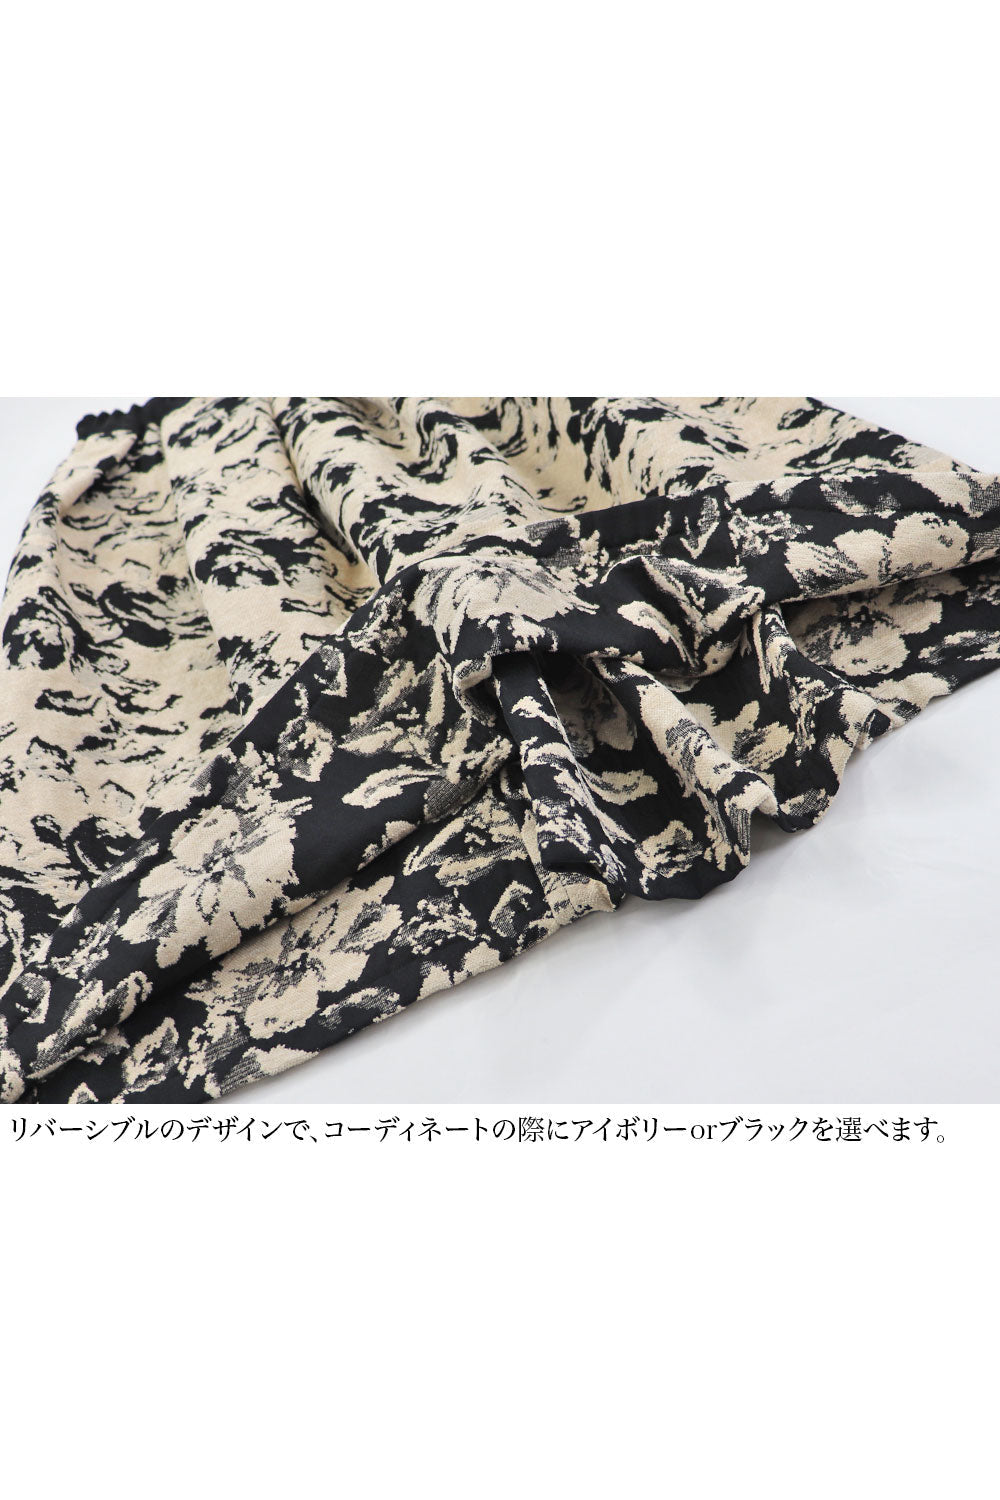 花柄ジャガード リバーシブルスカート – IKUKO ONLINE SHOP